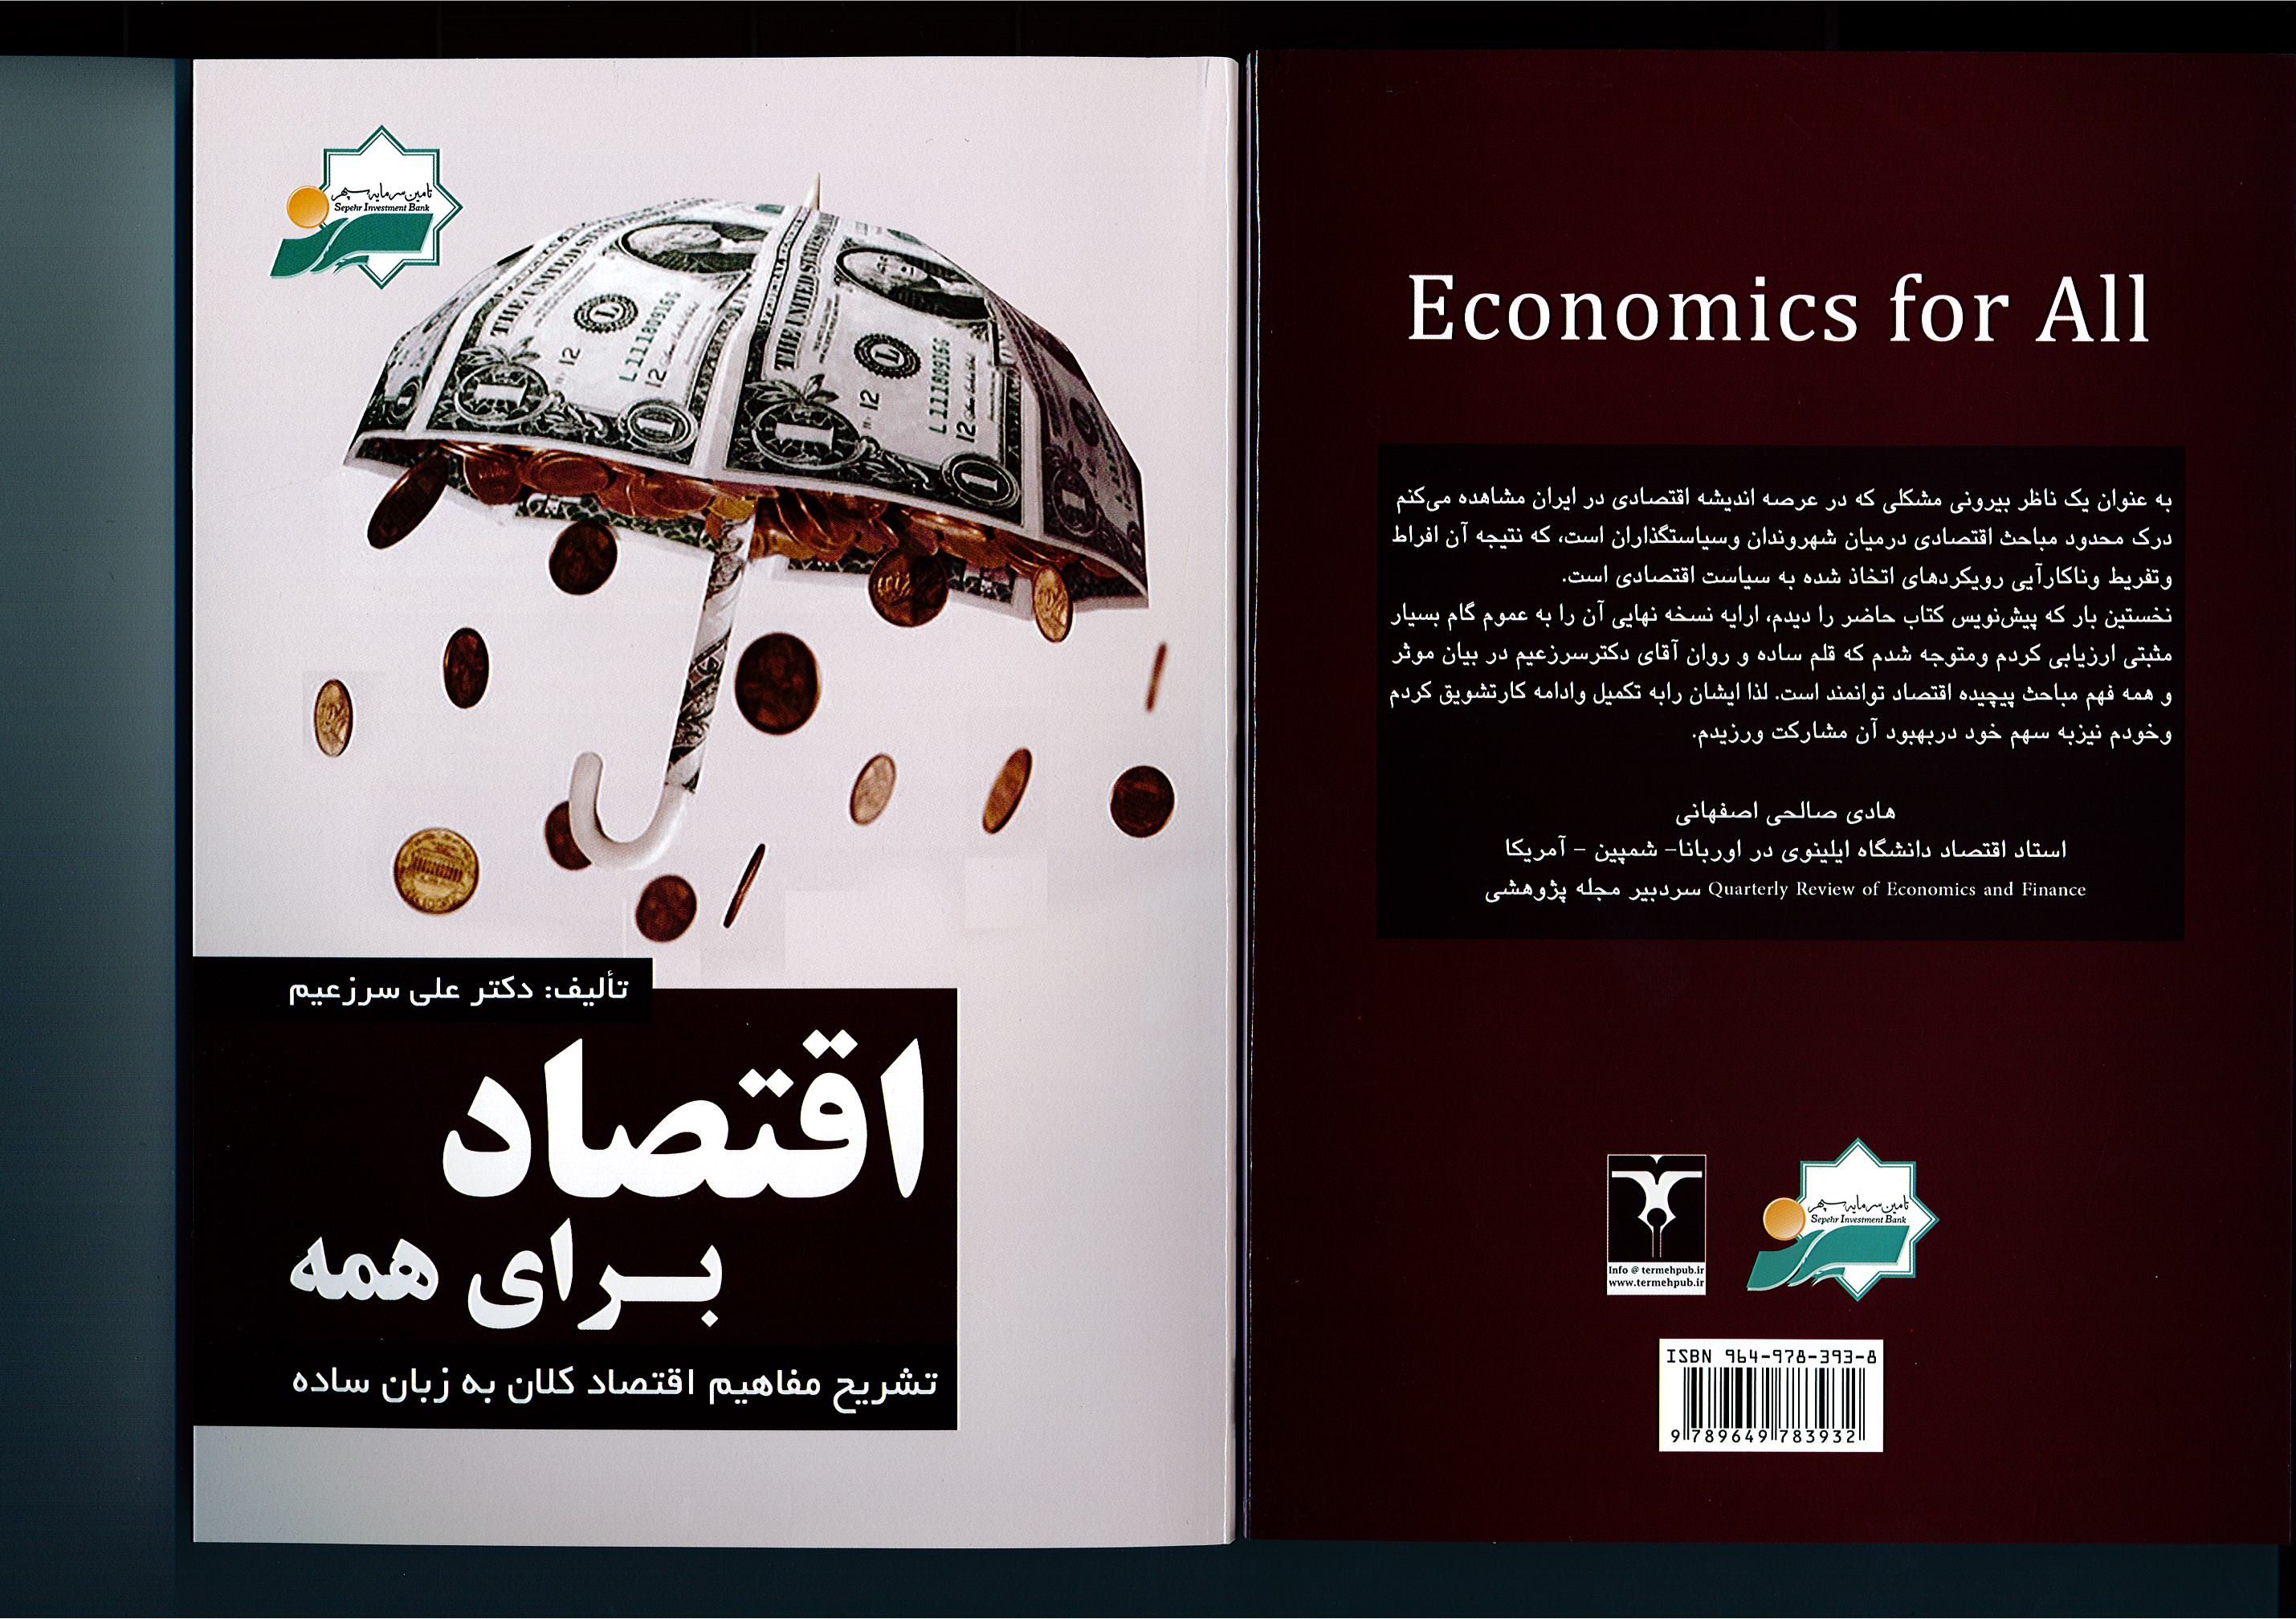 کتابی برای شناخت ساده اقتصاد